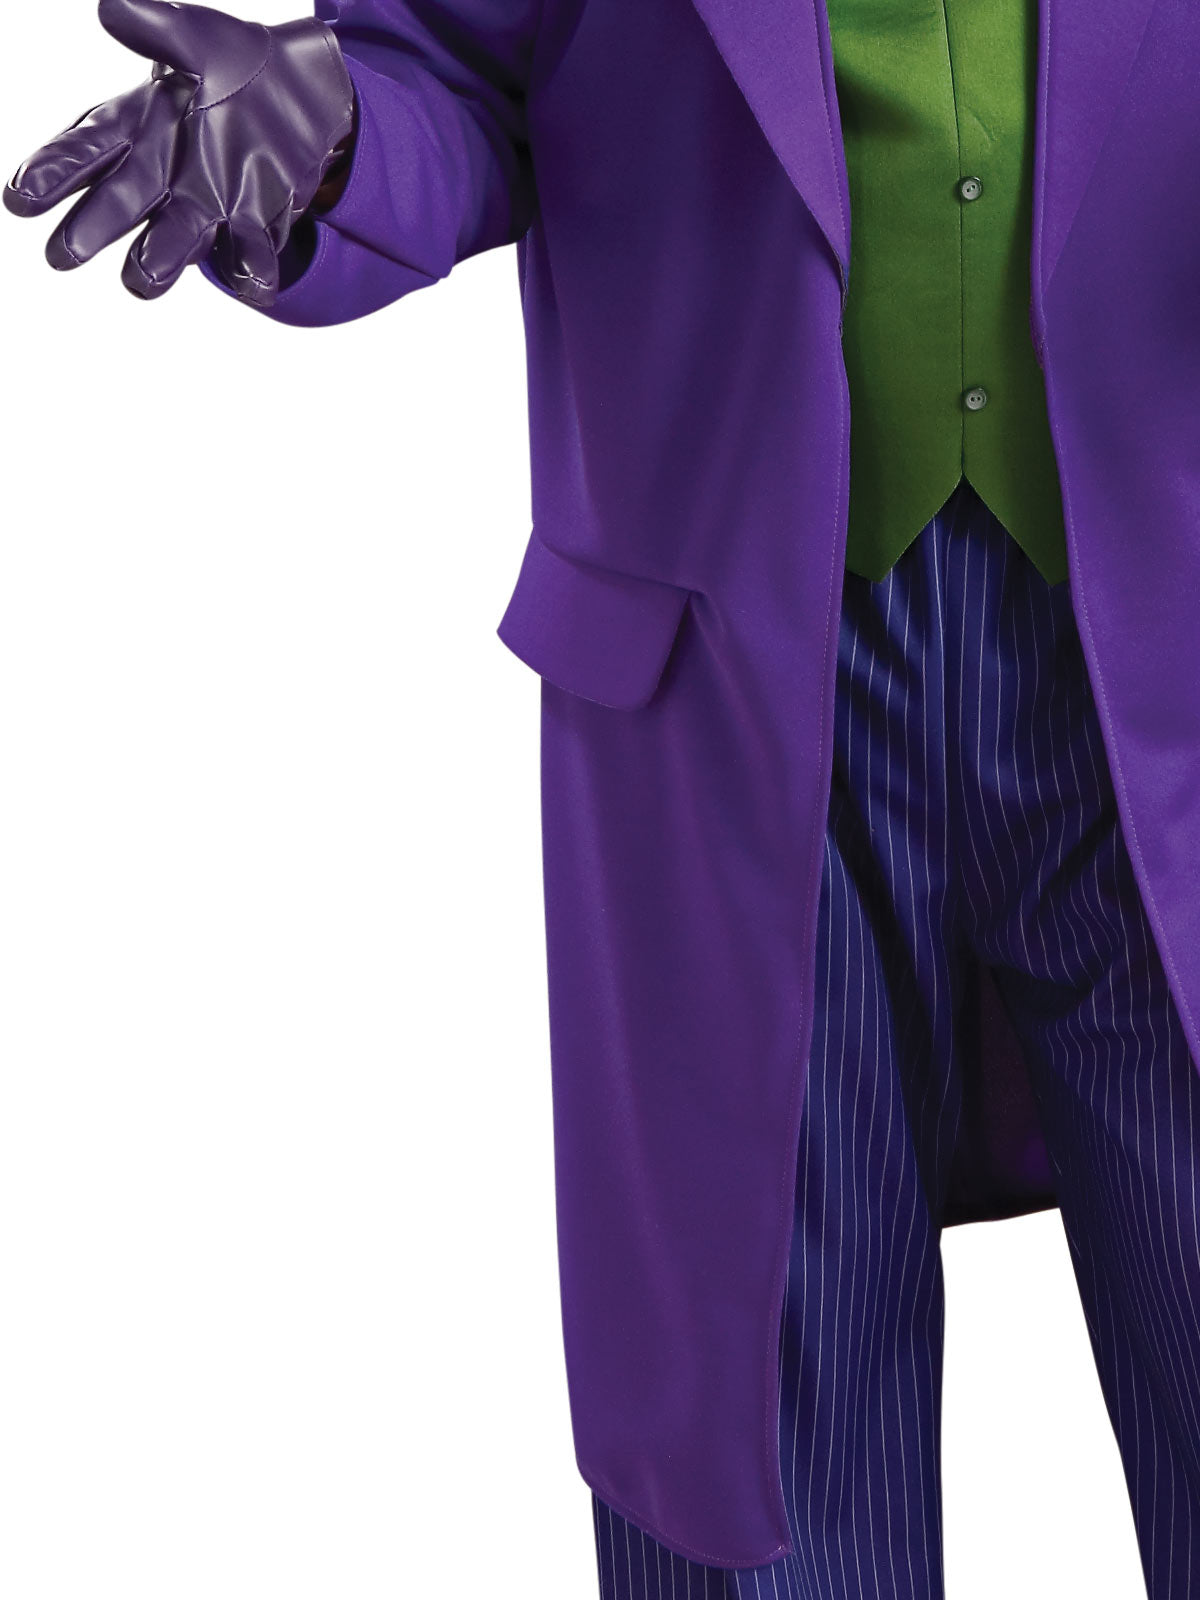 The Joker Batman Villian Deluxe Adult Men's Costume Std & XL - Licensed